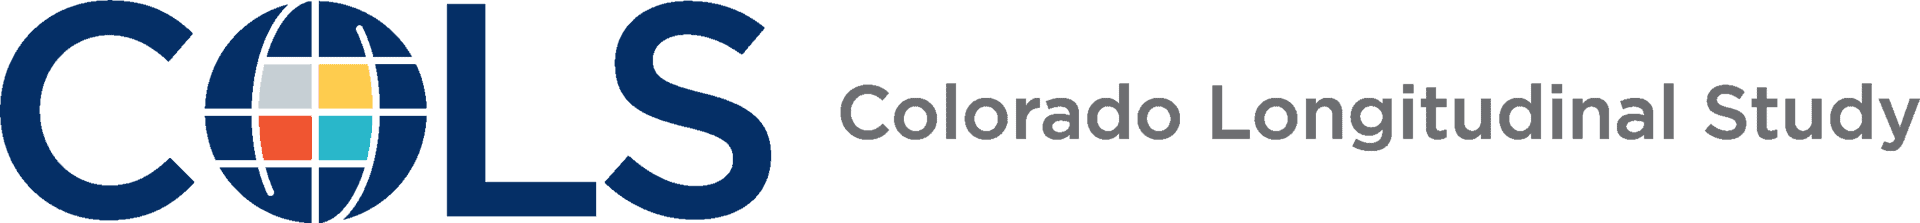 Colorado Longitudinal Study